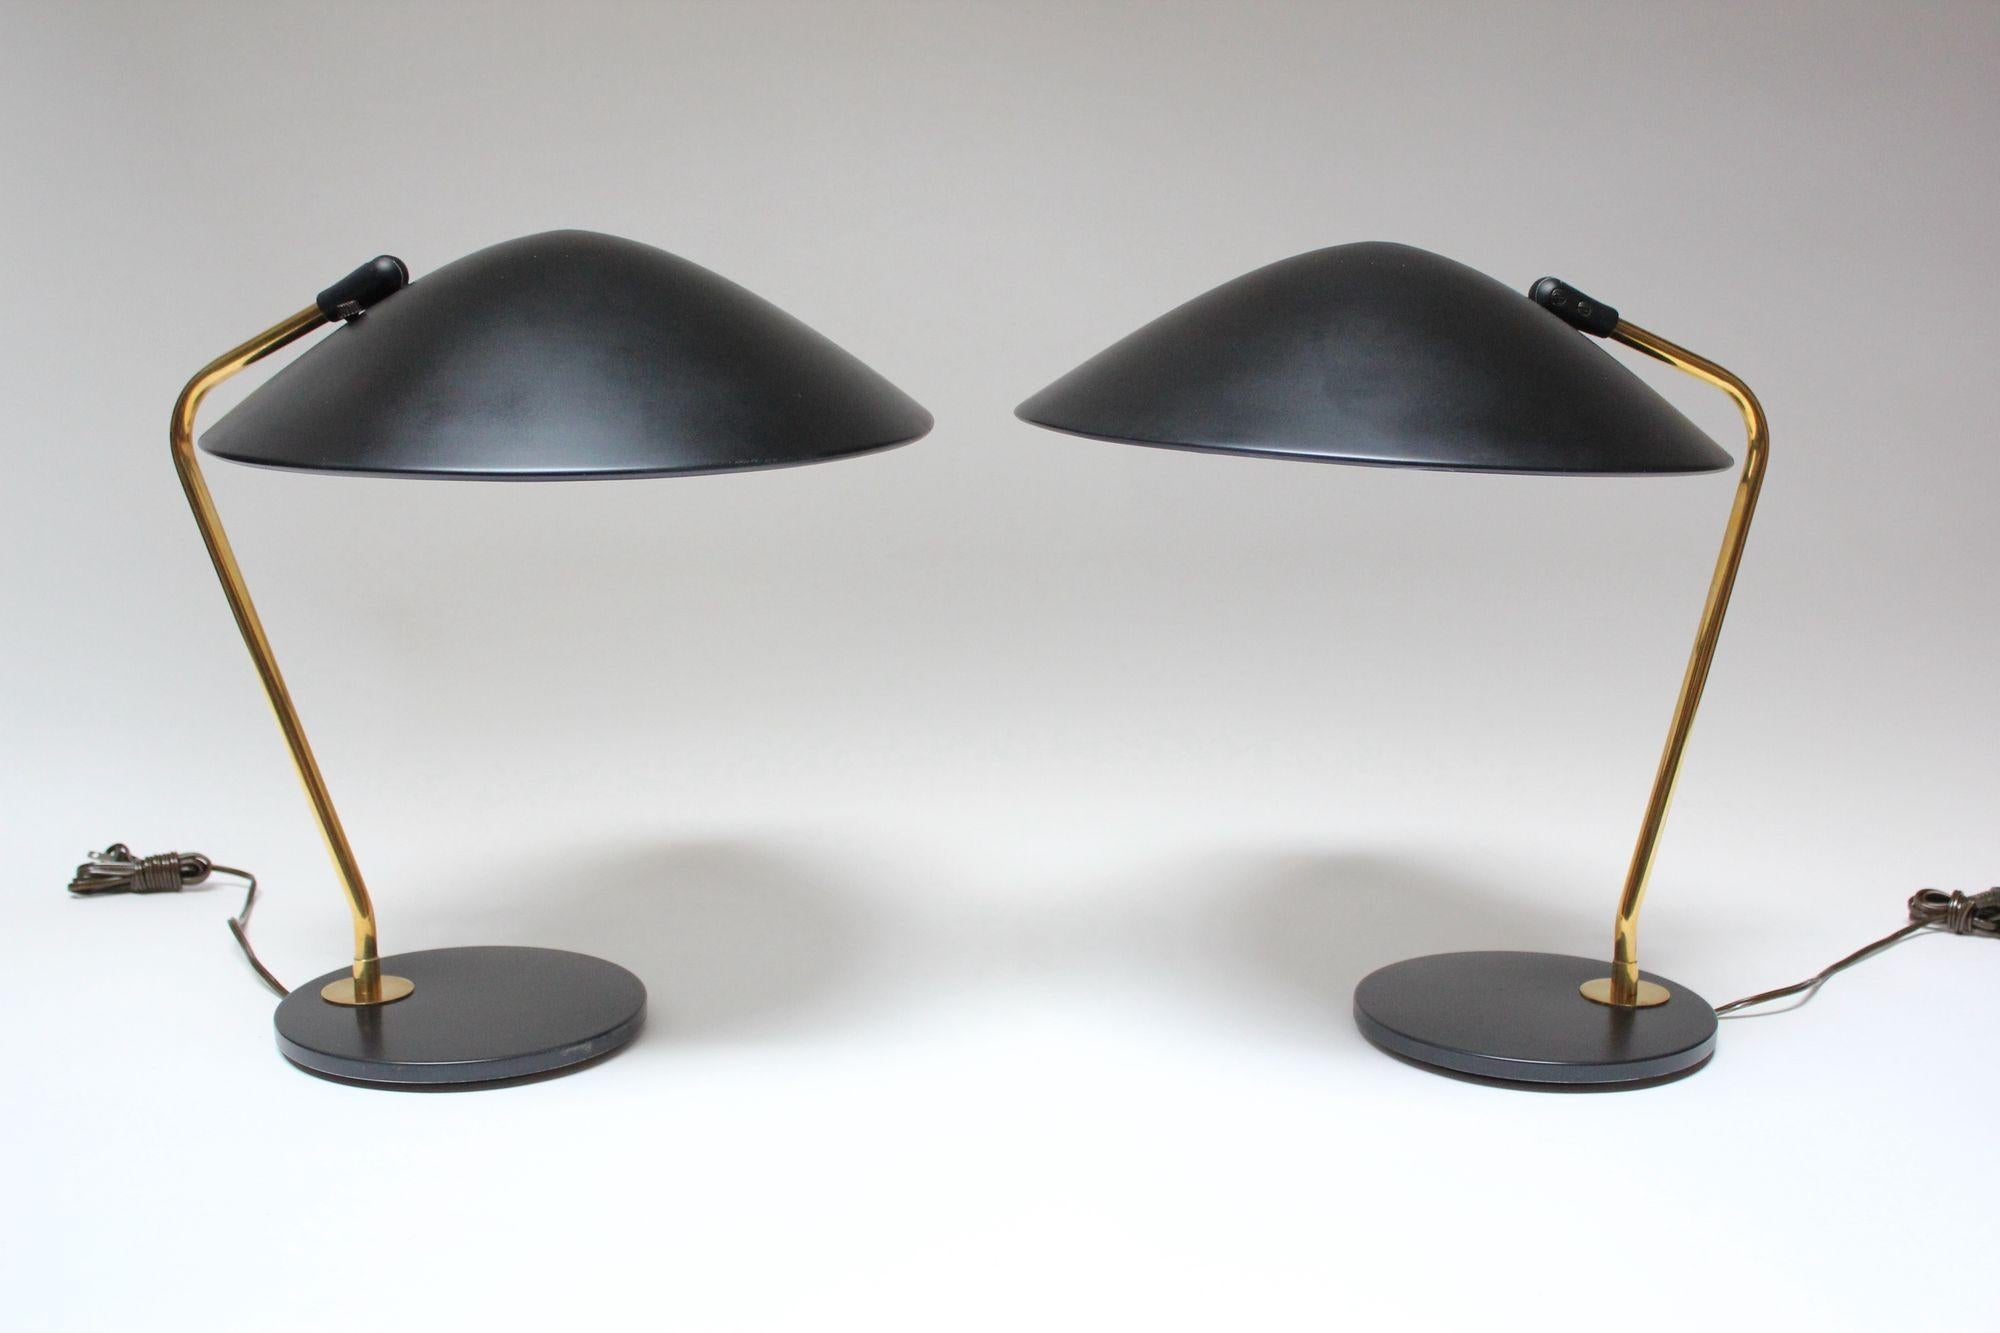 Ein Paar Tischlampen von Gerald Thurston für Lightolier, bestehend aus übergroßen, verstellbaren, schwarzen Metallschirmen und entsprechenden runden Sockeln mit Messingstielen (ca. 1950er Jahre, USA).
Die schwarze Farbe wurde konservativ